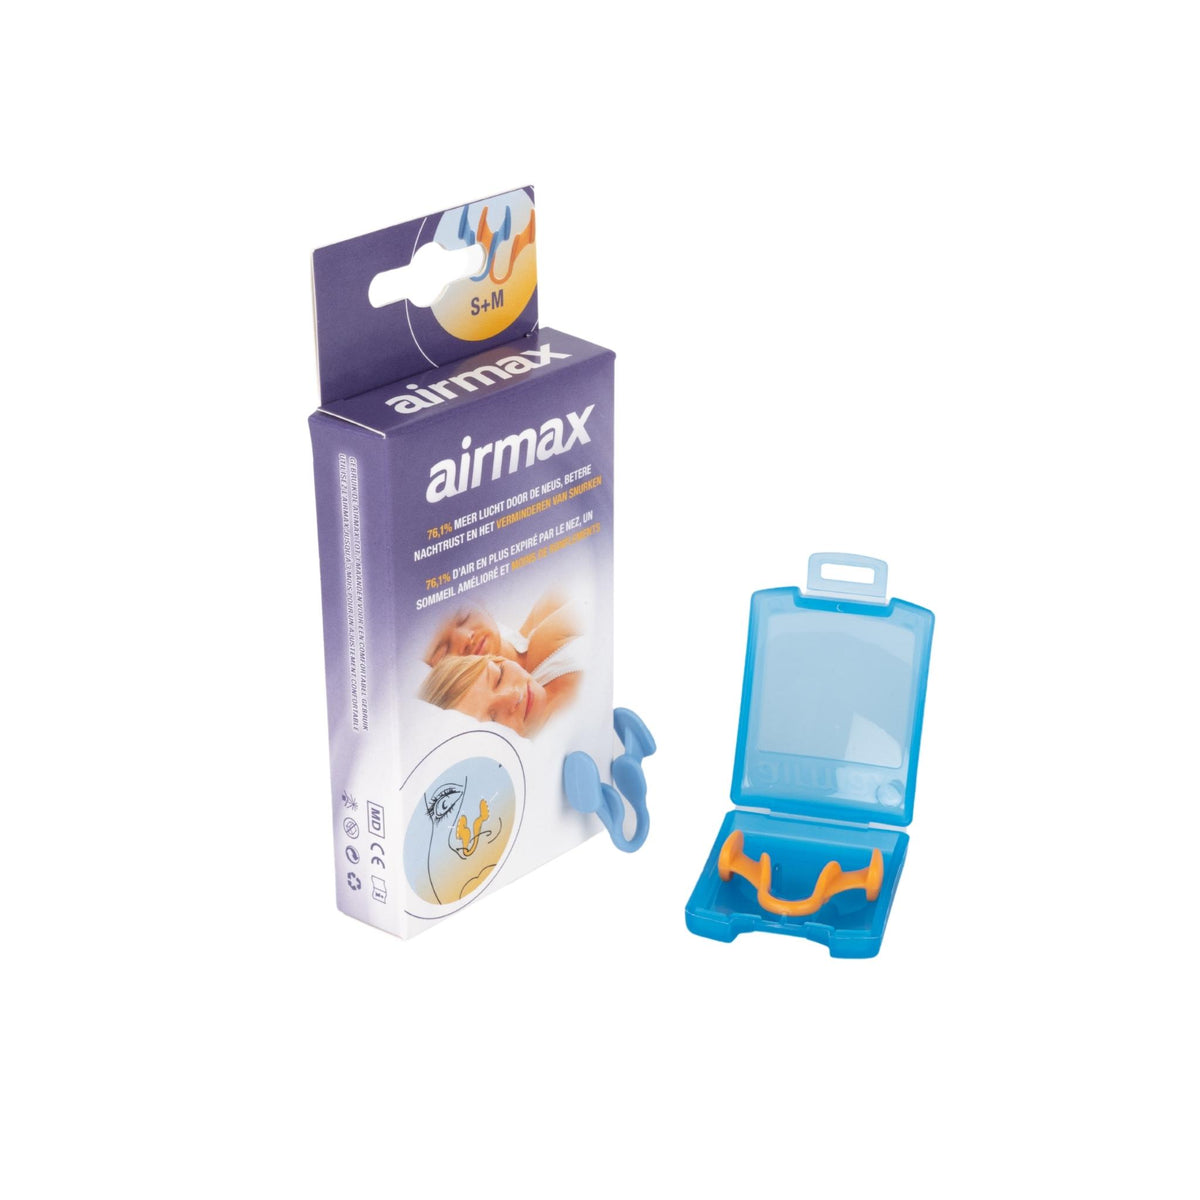 AirMax - Nosni dilatator proti smrčanju in za lažje dihanje skozi nos - Najzdravnik